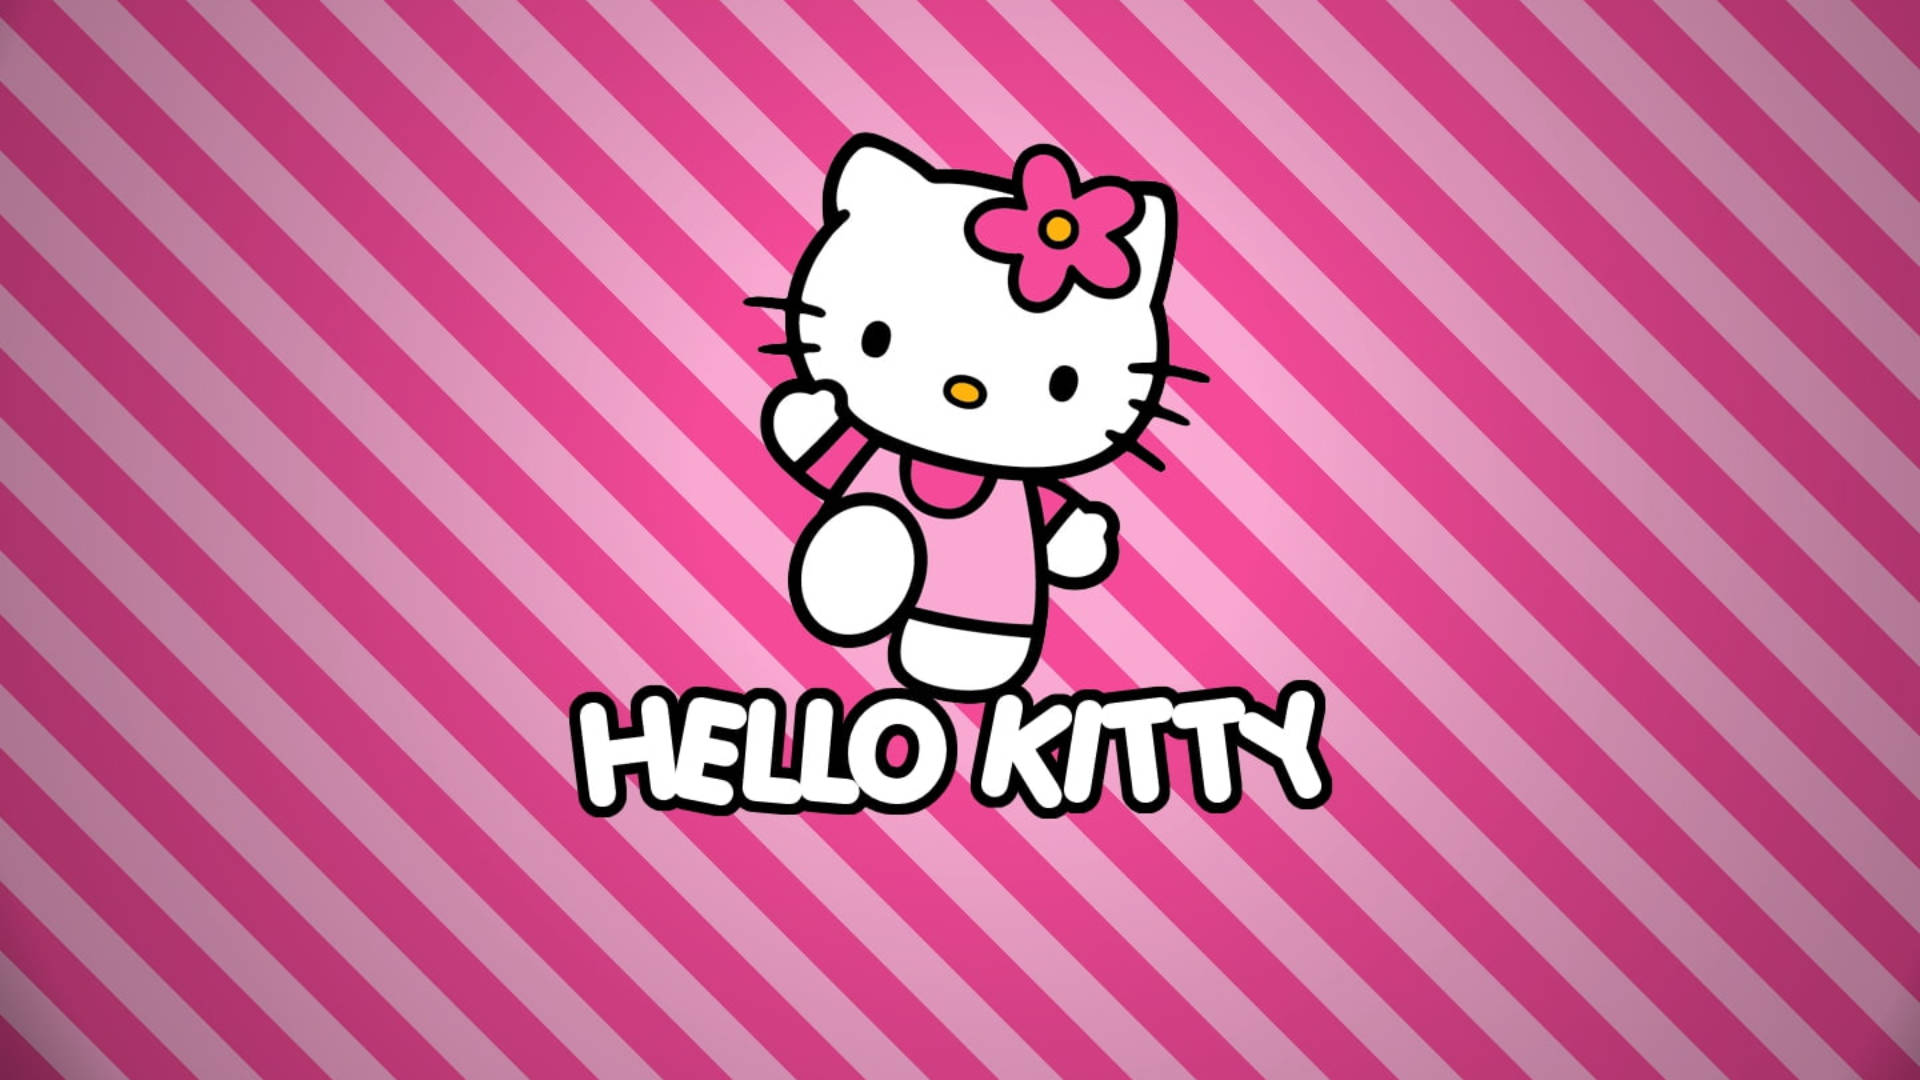 Pink Stripes Hello Kitty Desktop Wallpaper